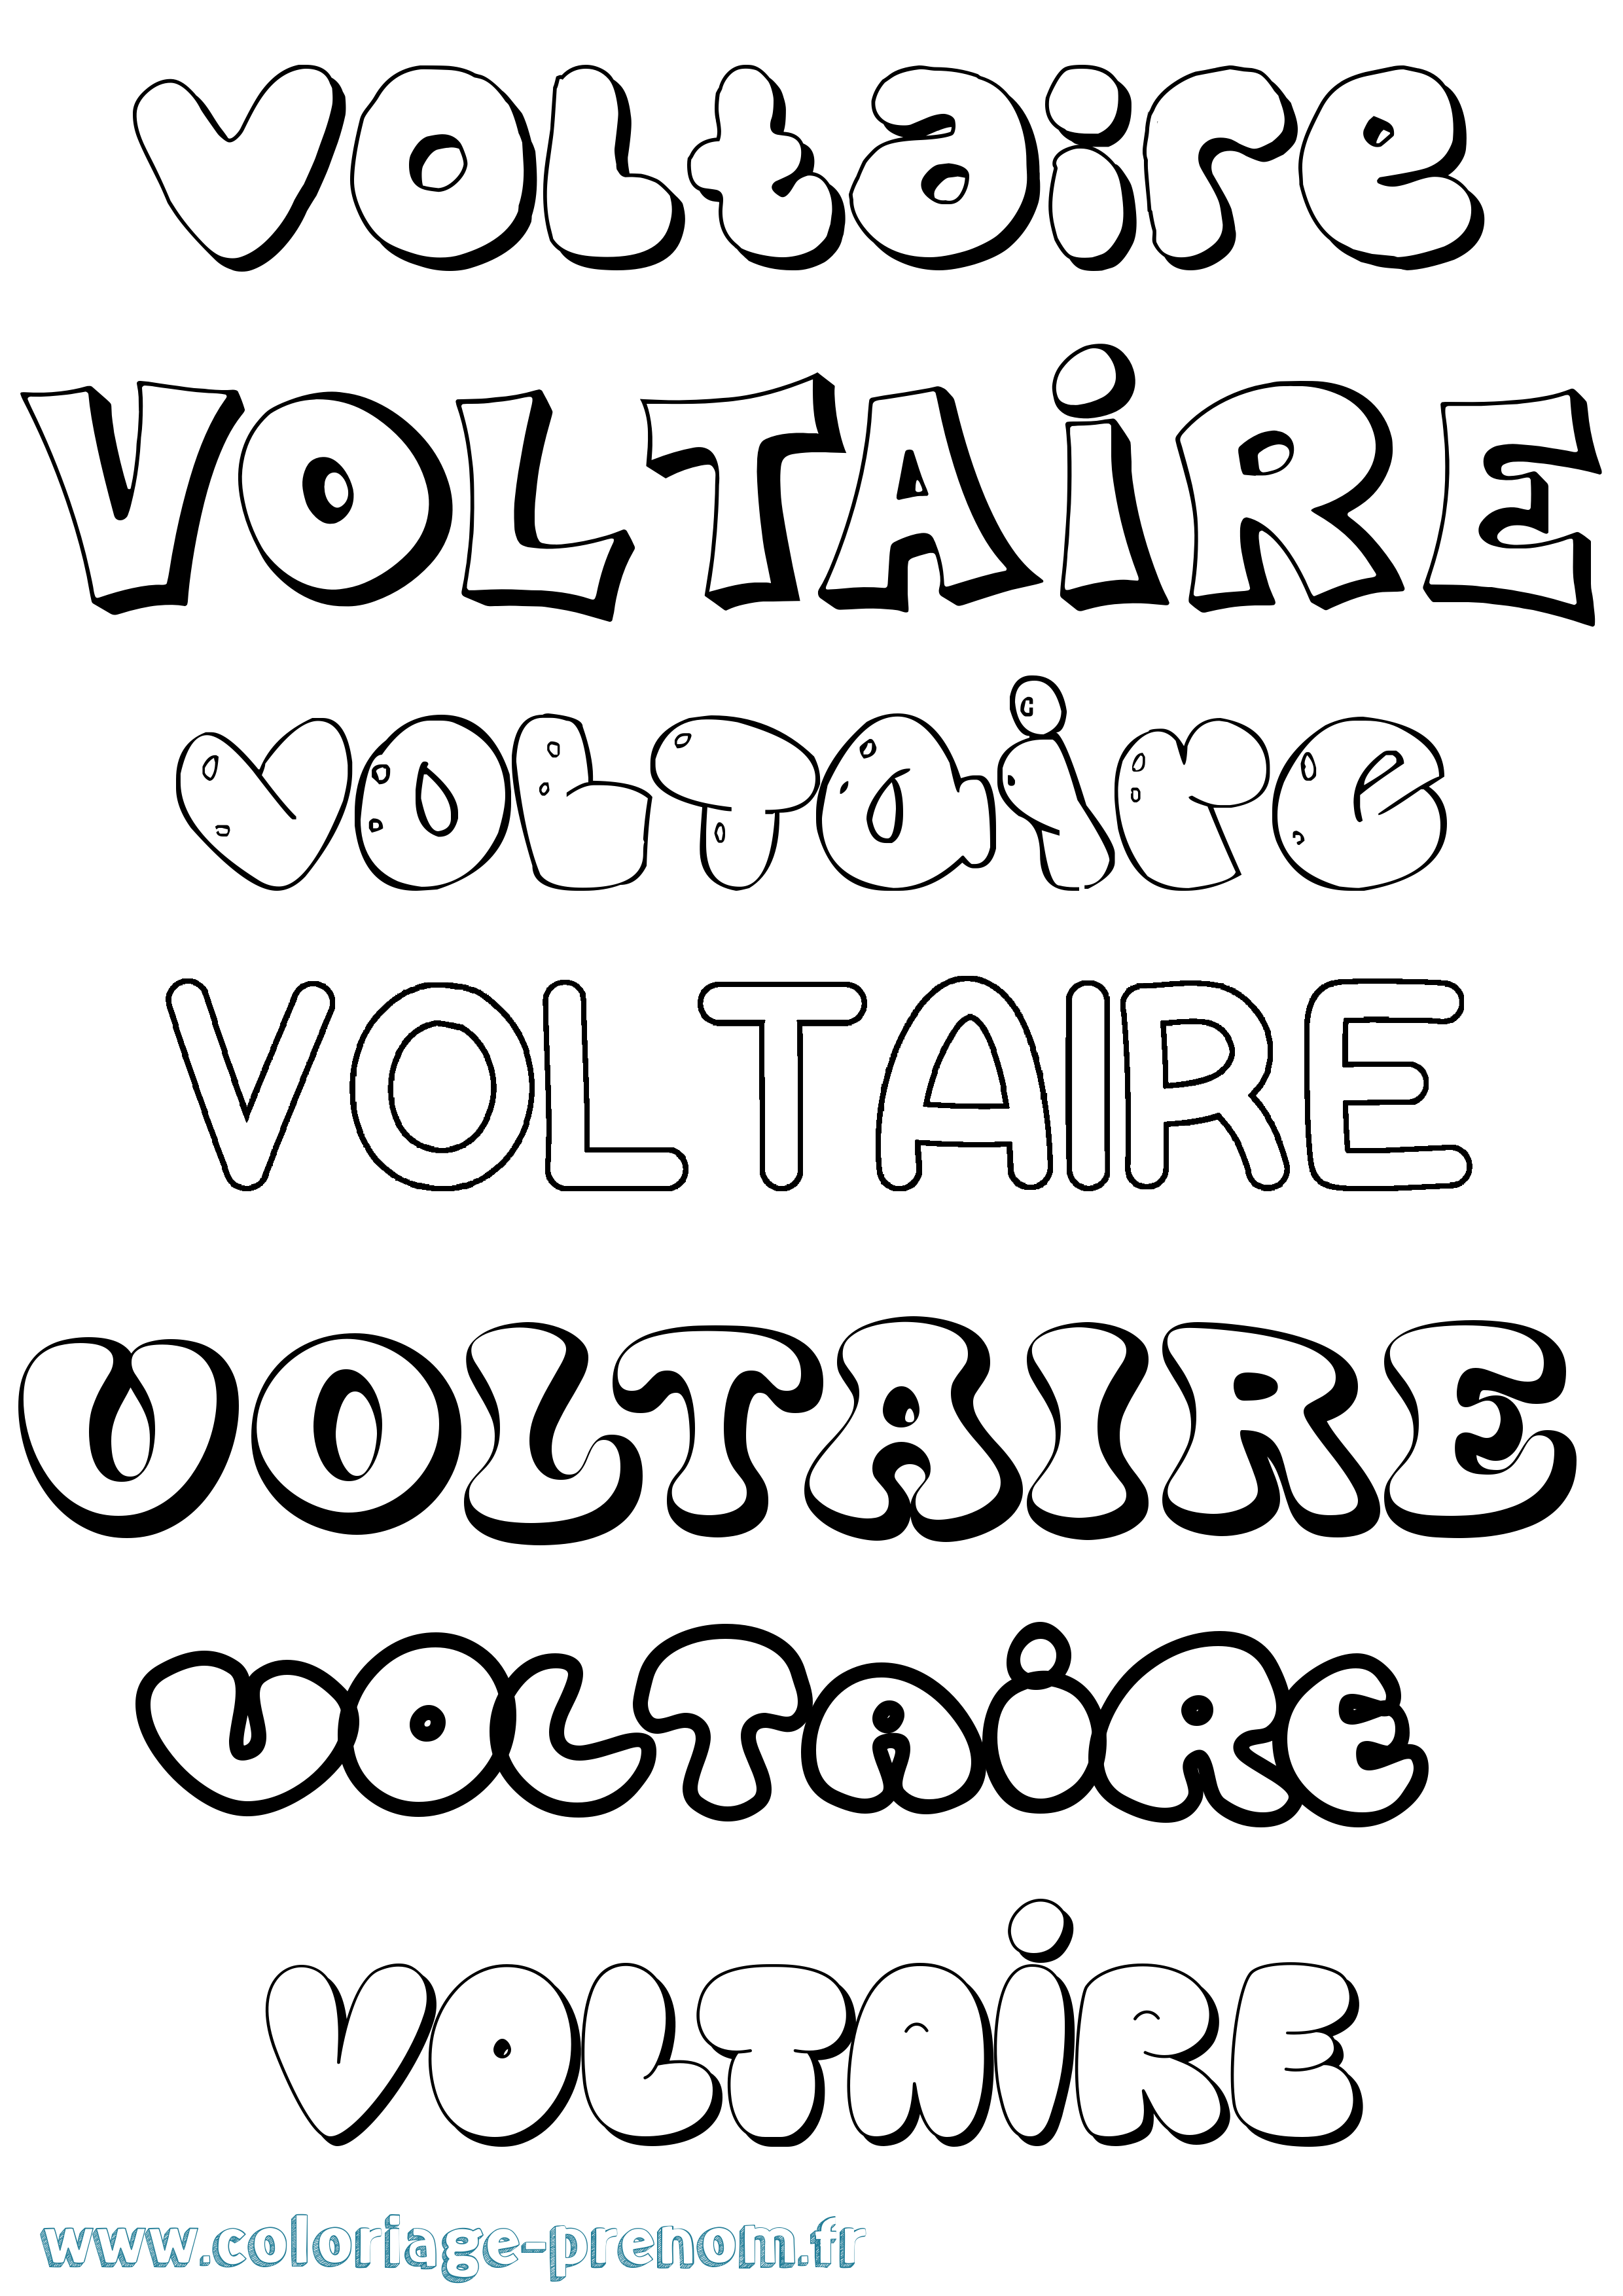 Coloriage prénom Voltaire Bubble